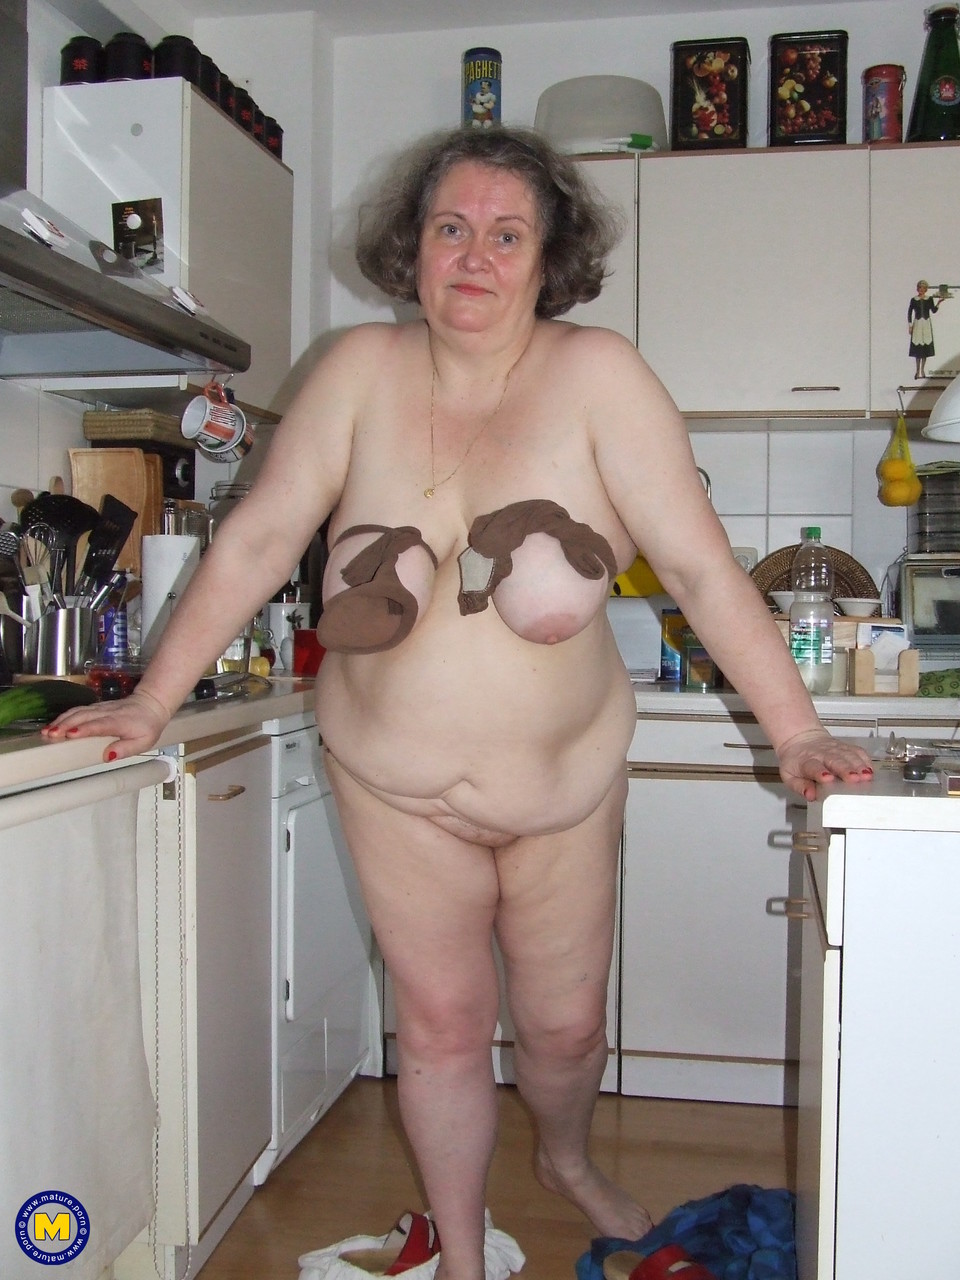 Fat mature housewife Birgid masturbates with a cucumber in the kitchen foto porno #423883243 | Mature NL Pics, Birgid, Granny, porno mobile